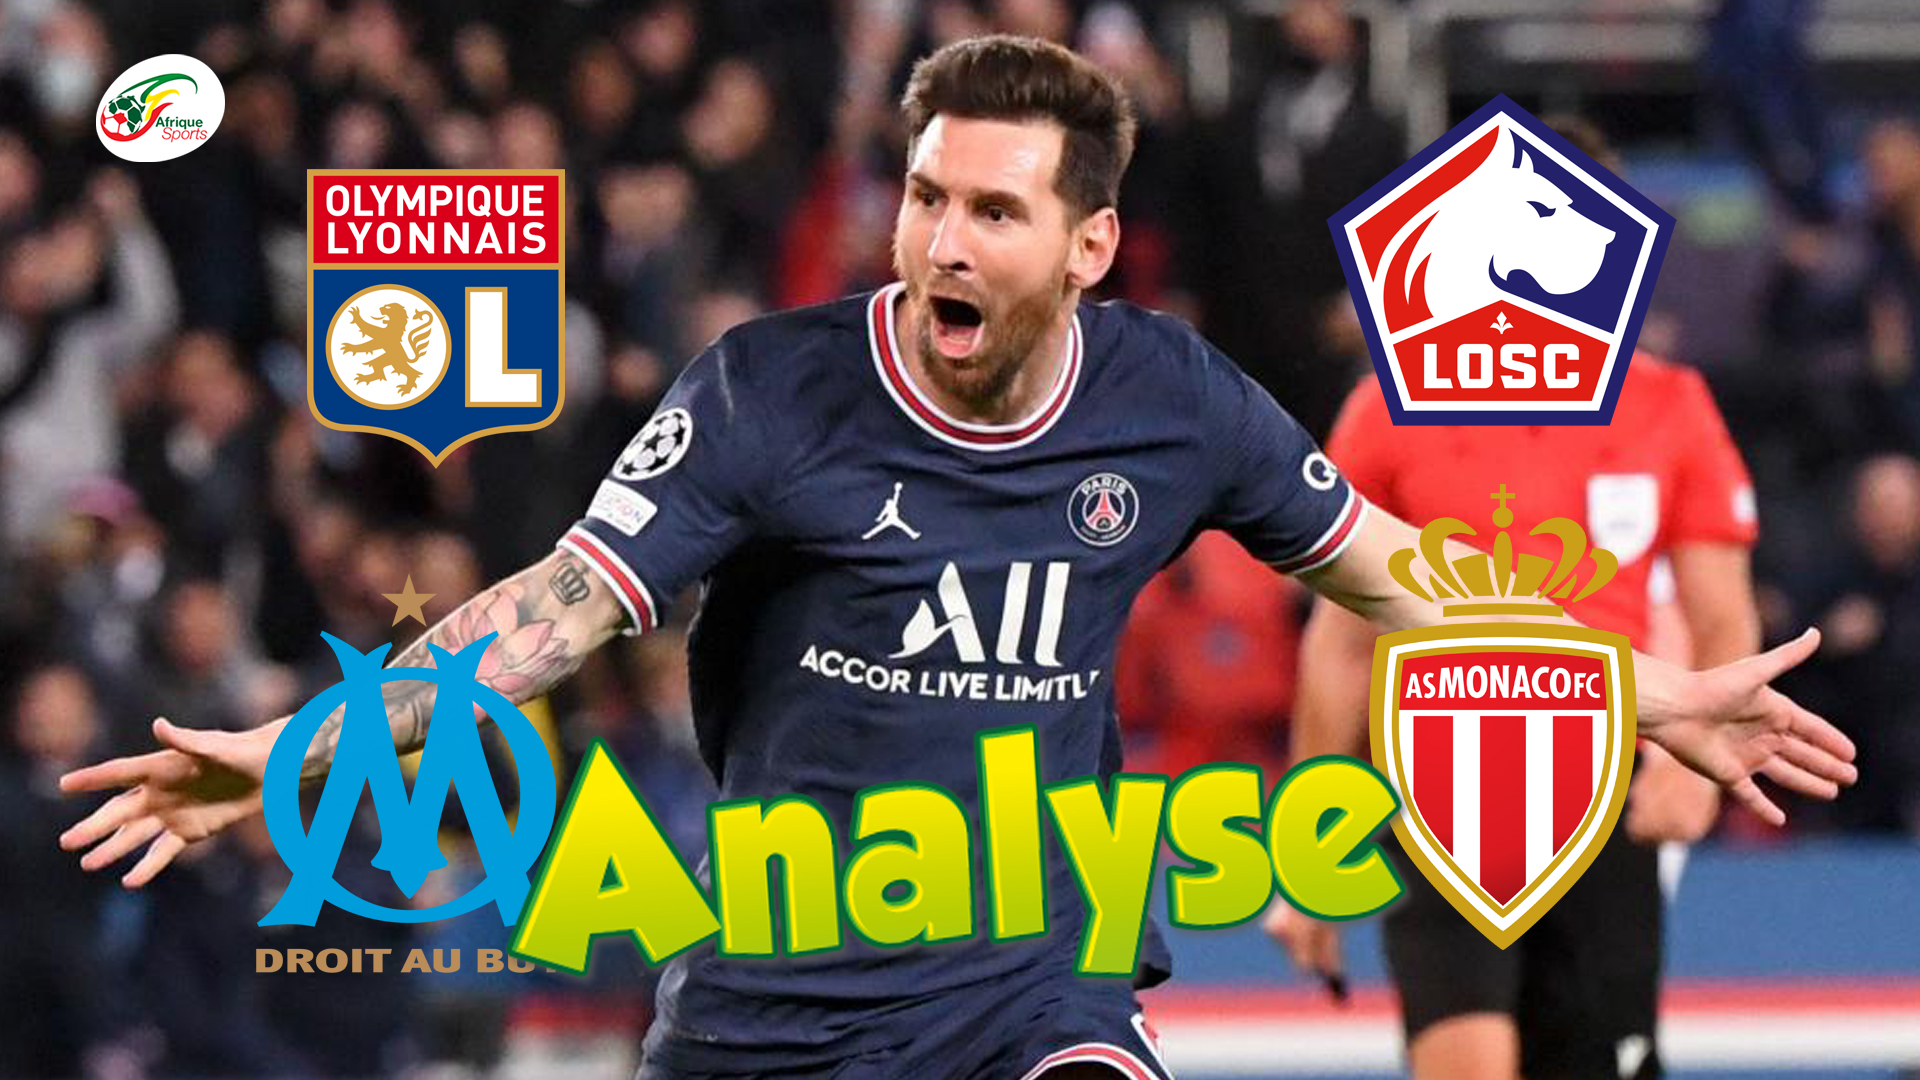 Pourquoi les équipes de Ligue 1 doivent avoir peur du retour de sélection de Lionel Messi | L’Analyse